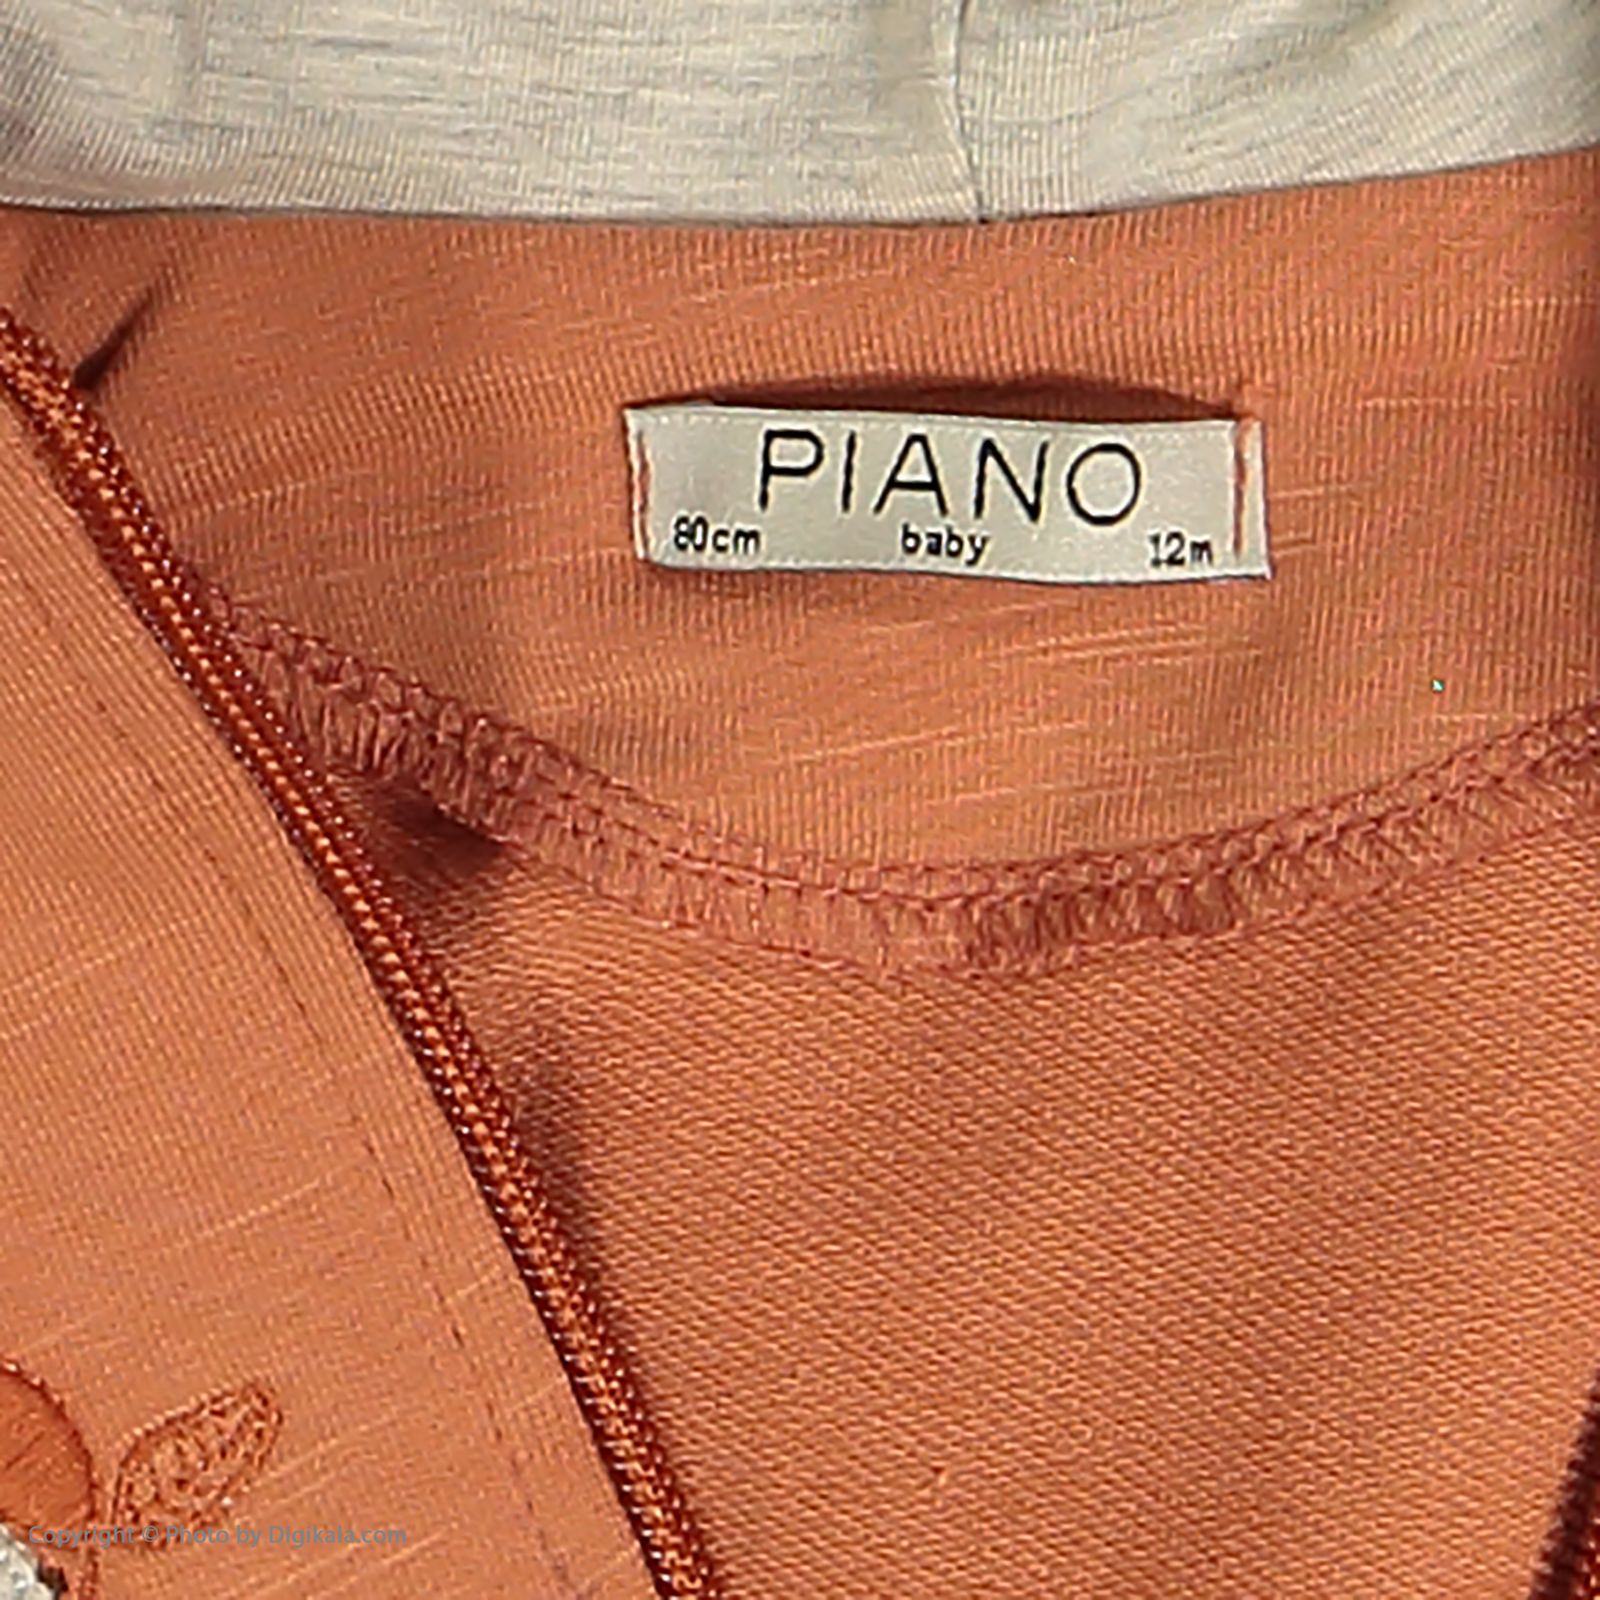 ست سویشرت و شلوار دخترانه پیانو مدل 01673-73 -  - 8